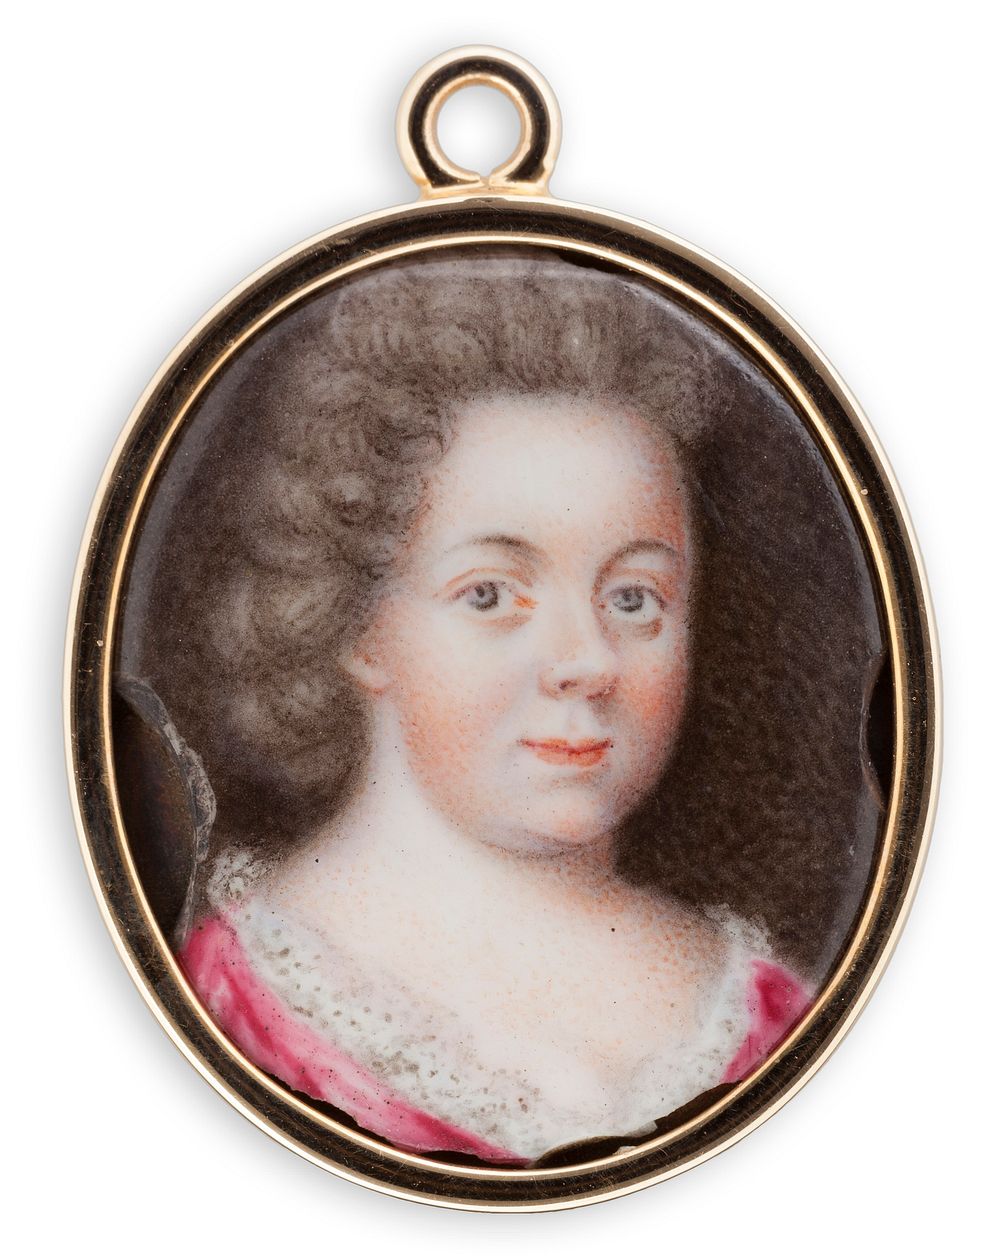 Magdalena stenbock, 1667 - 1717